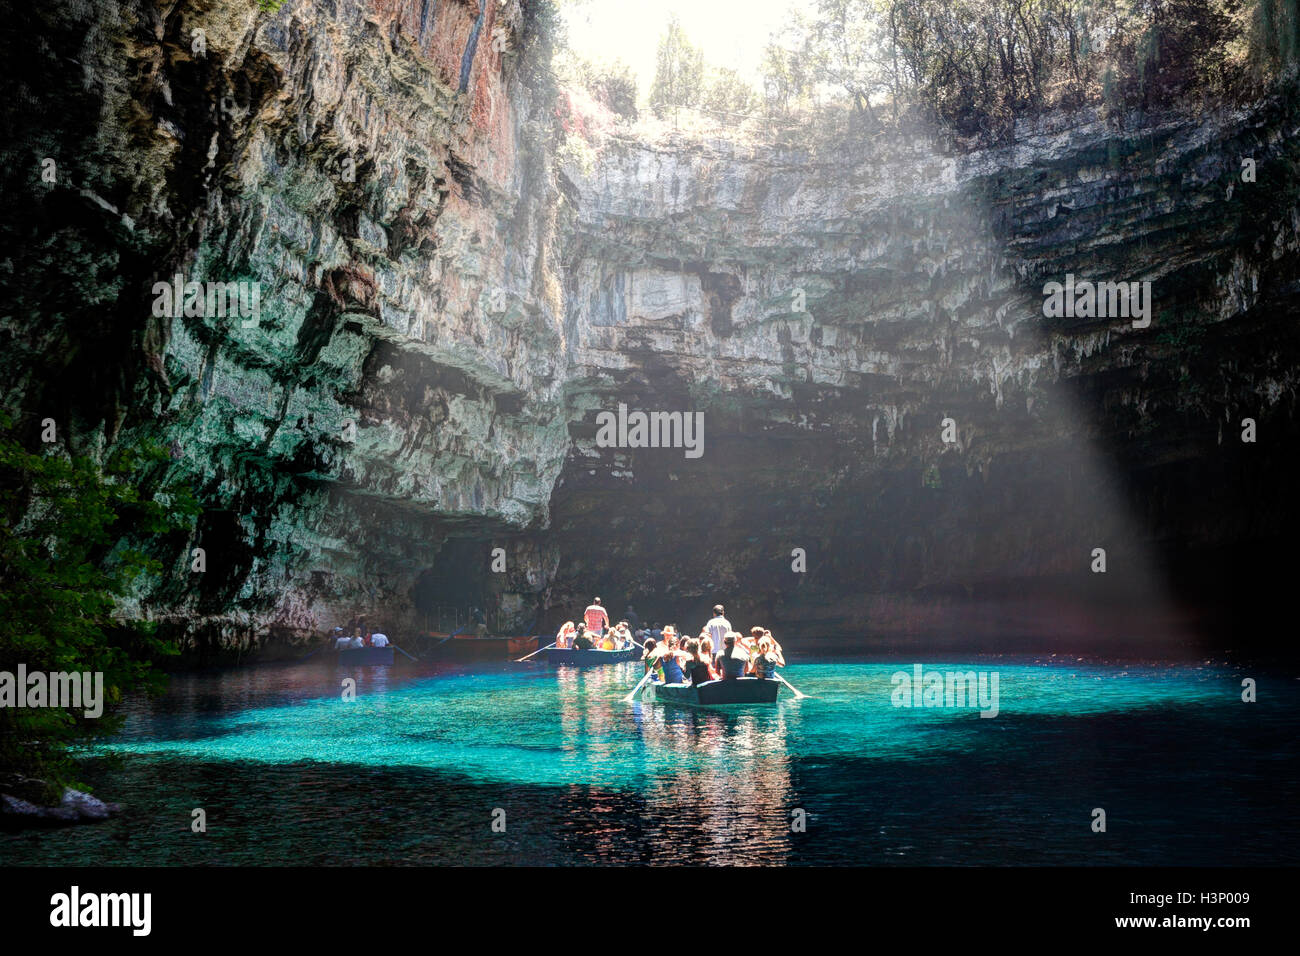 La visite dans la grotte de Melissani lake sur l'île de Céphalonie, Grèce Banque D'Images